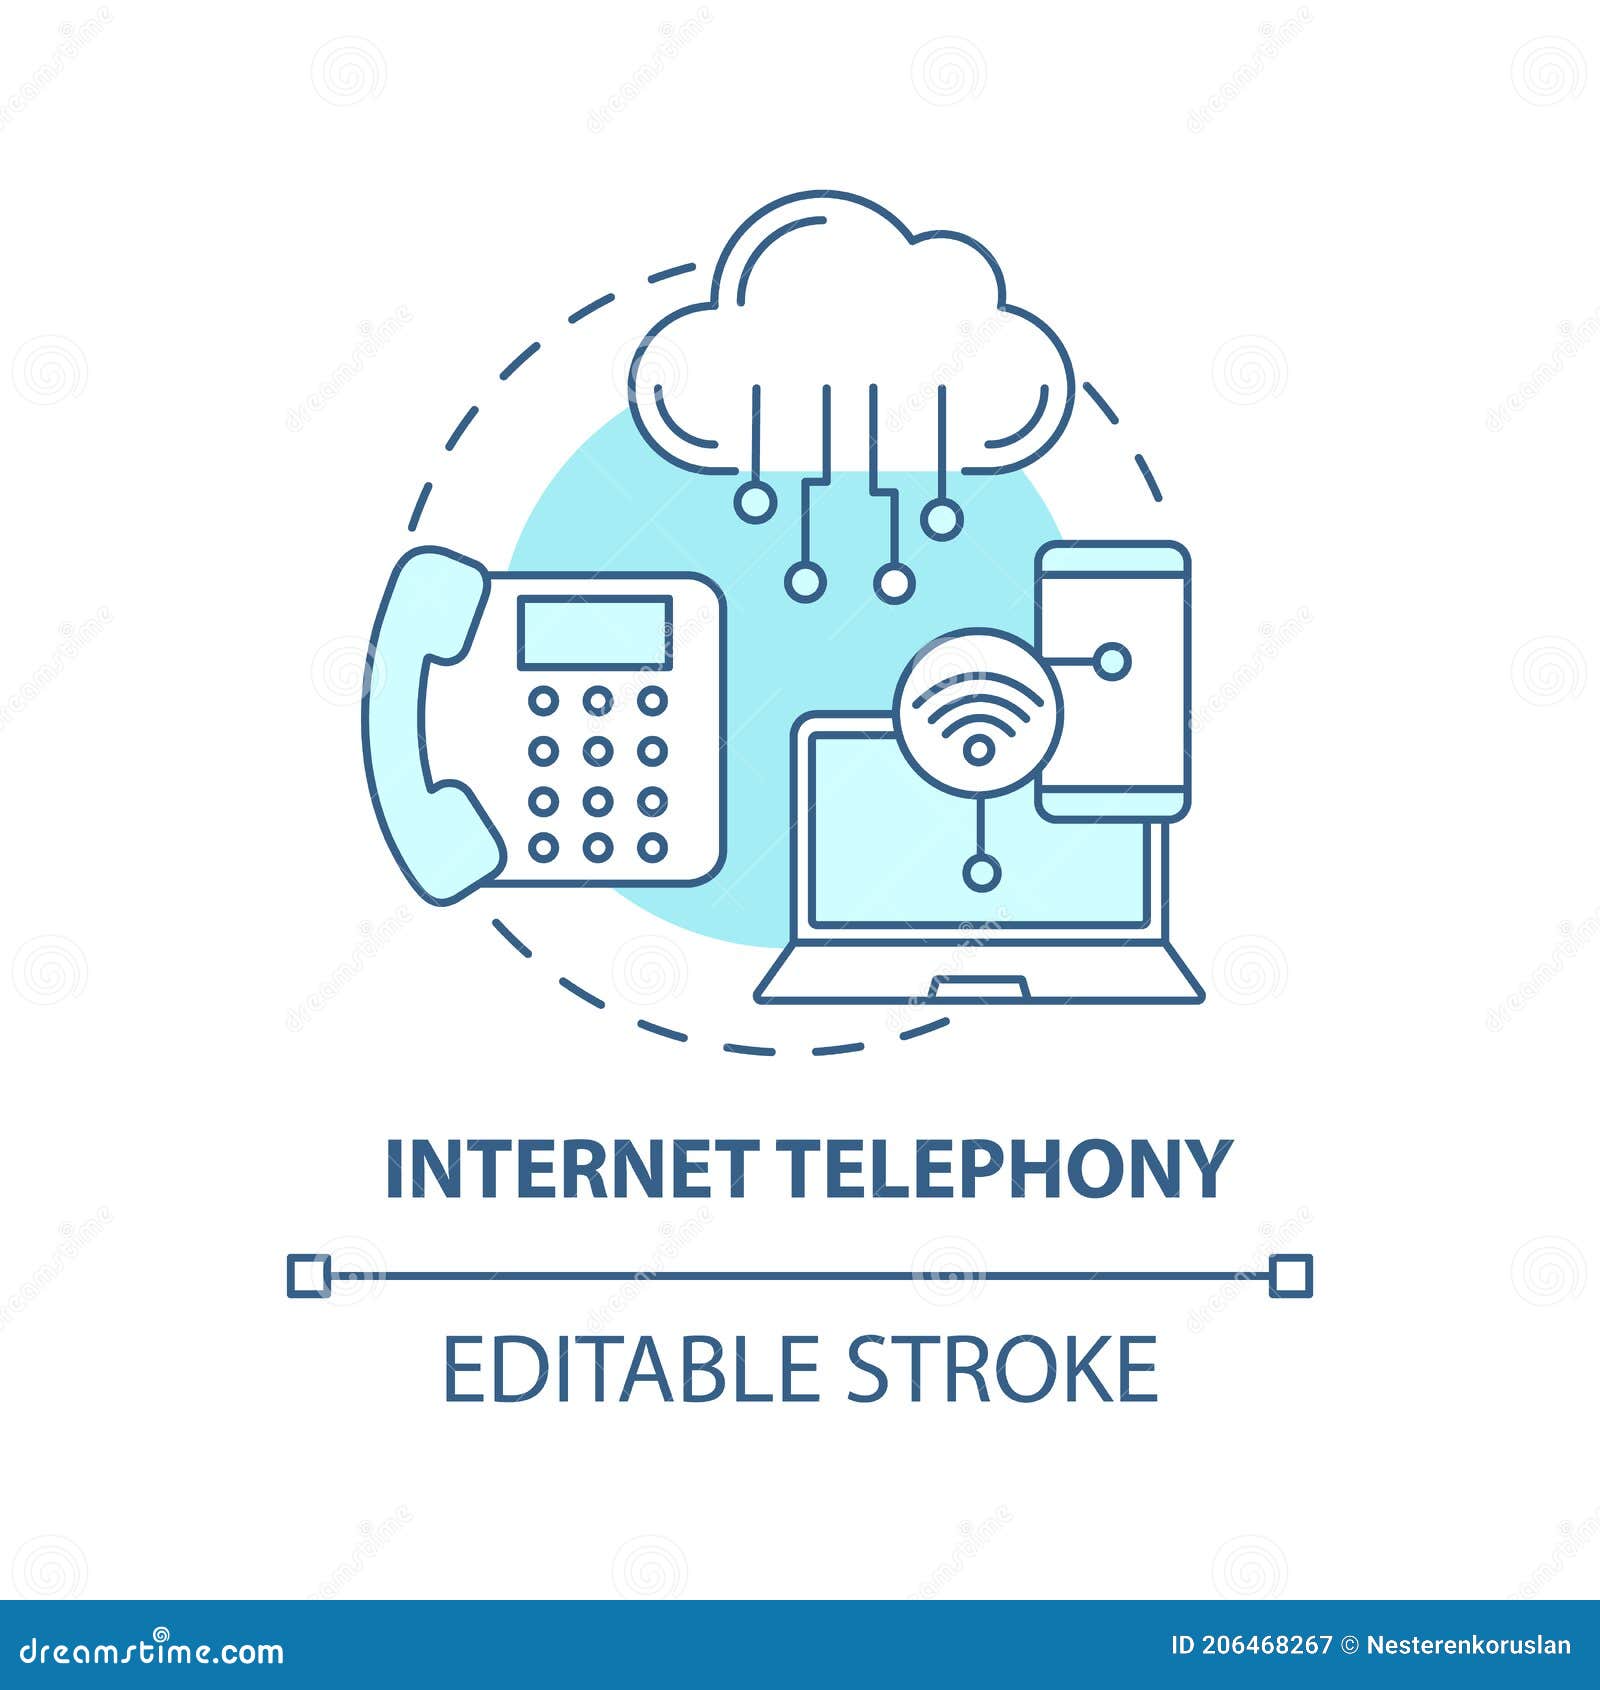 internet telephony concept icon